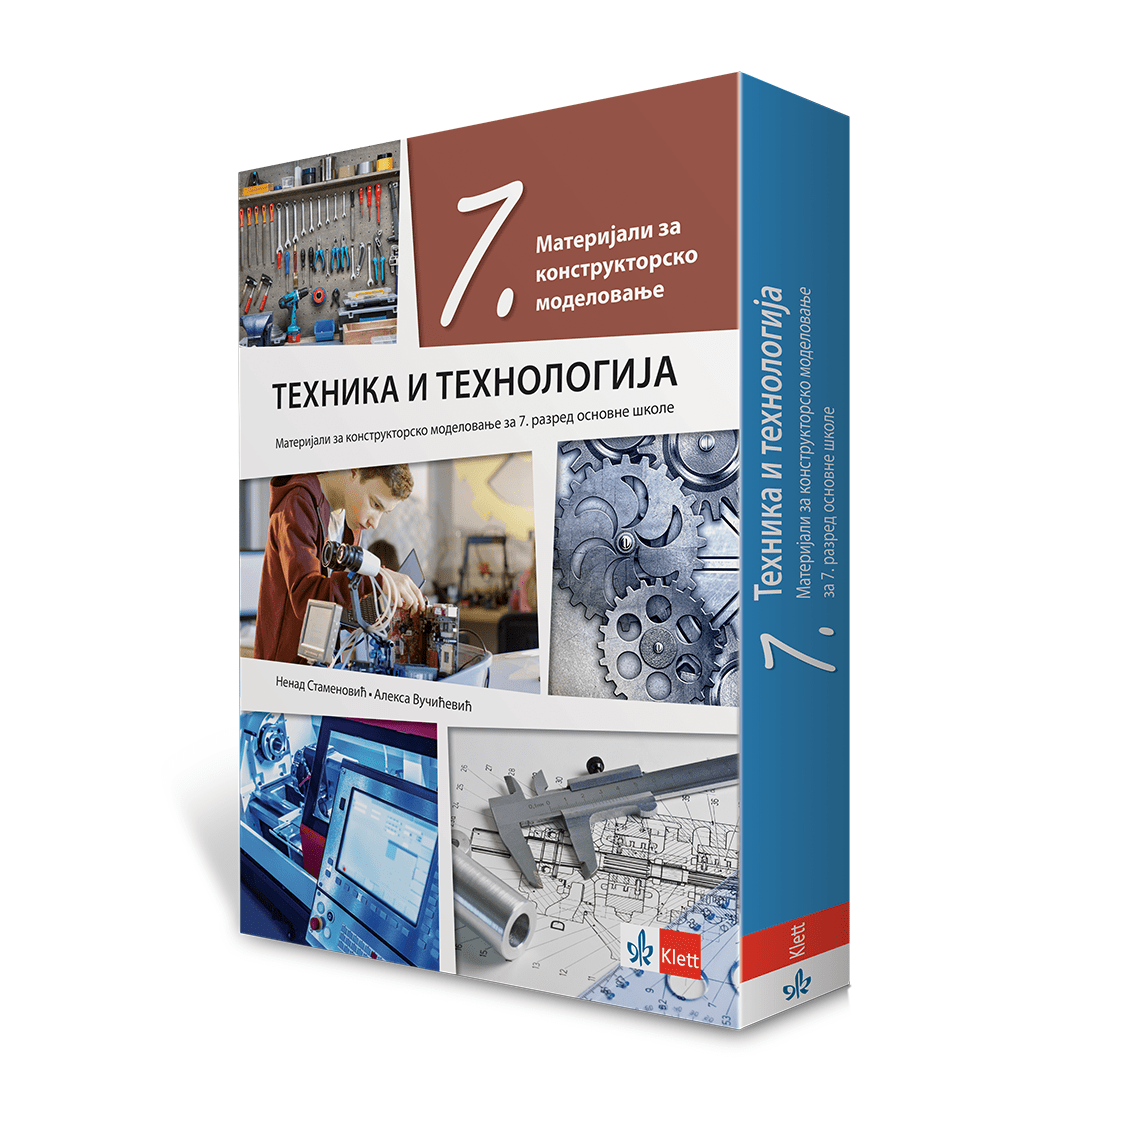 Техника и технологија 7, материјали са упутством на русинском језику